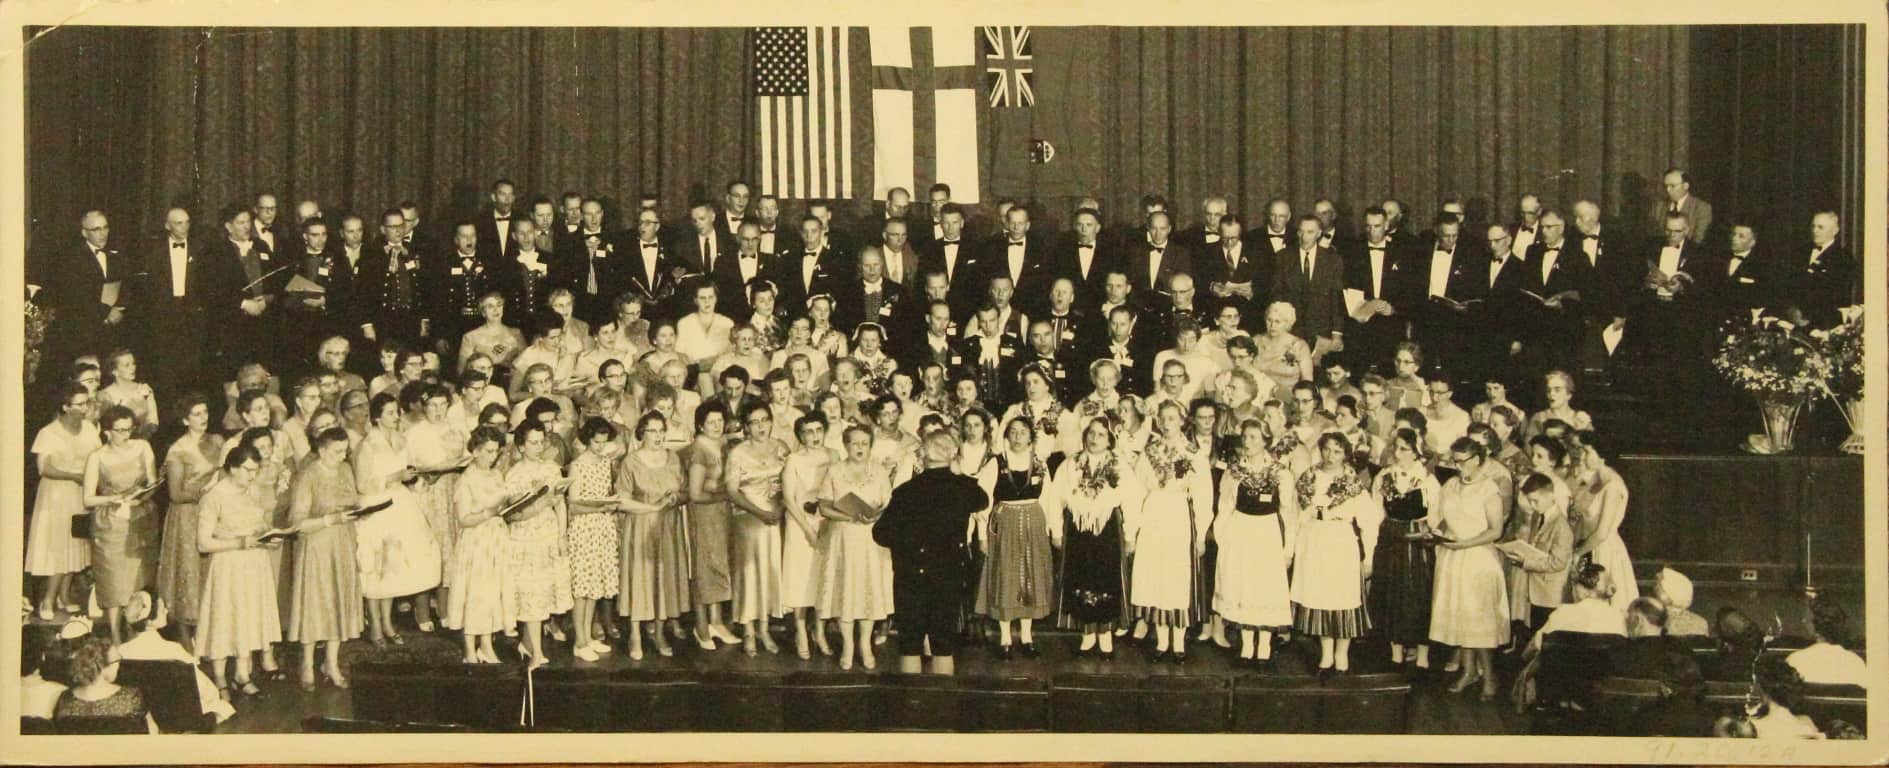 Order of Runeberg choir performing in Portland, Oregon in 1962.